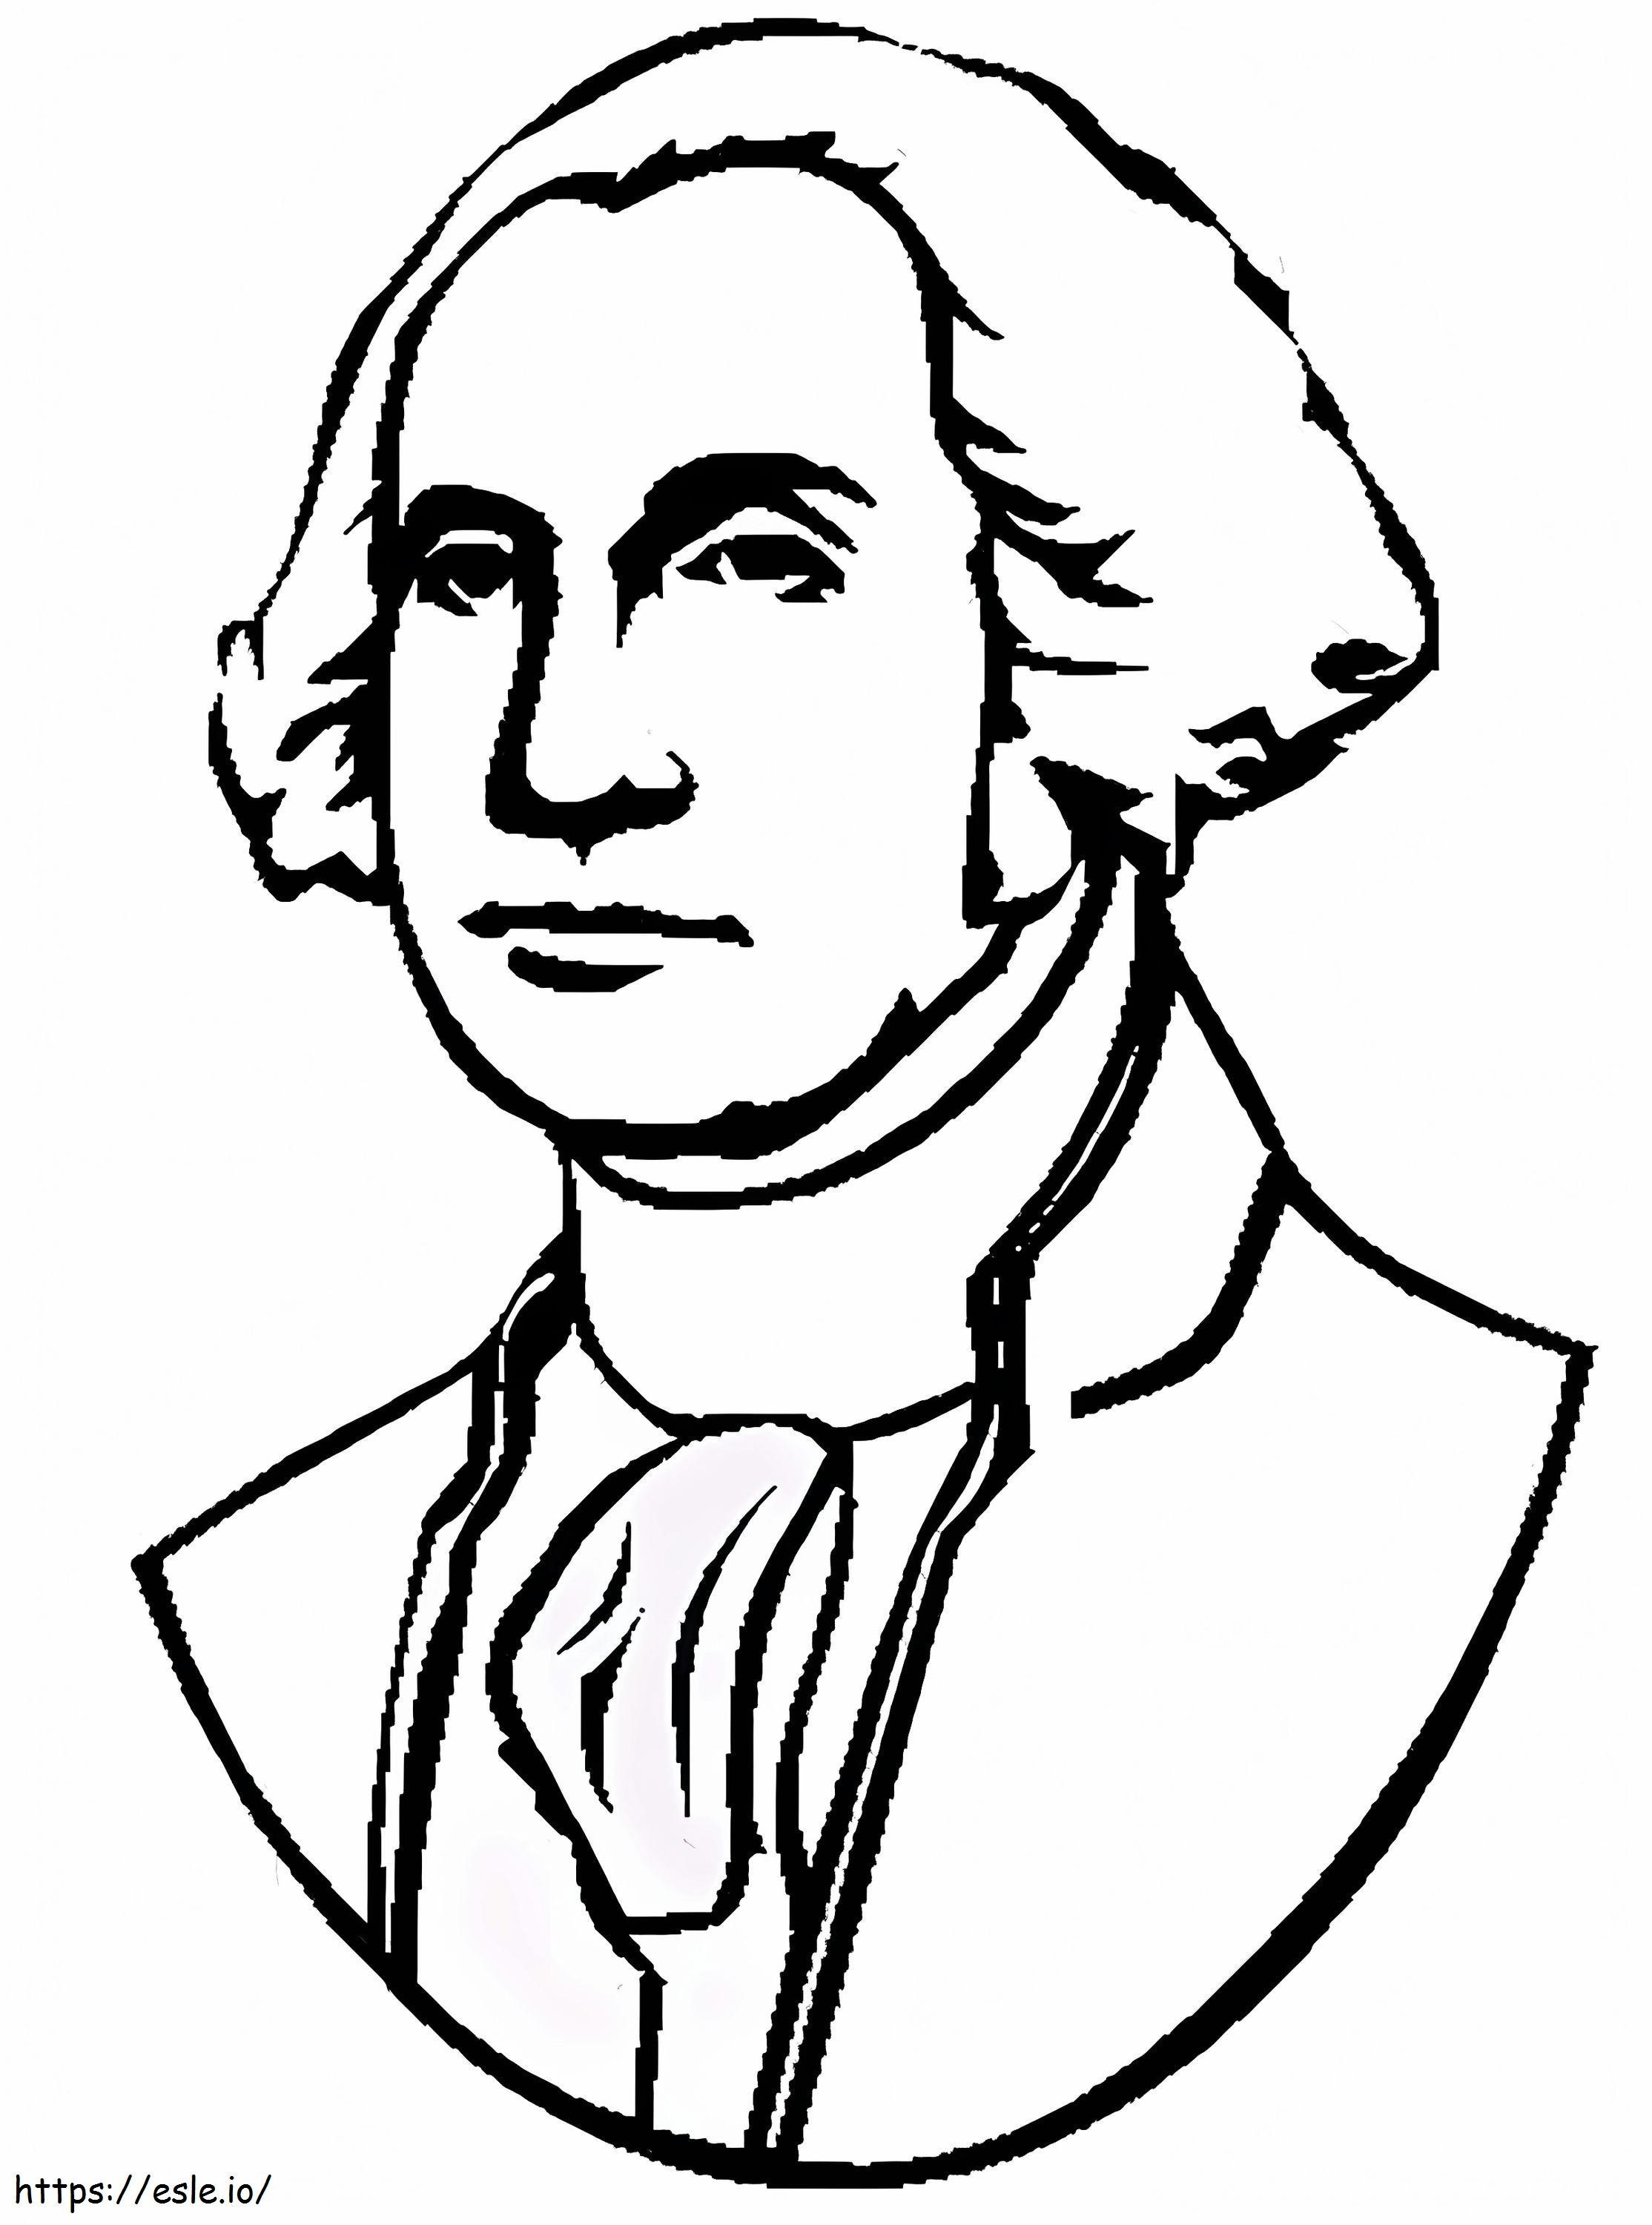 Președintele George Washington de colorat